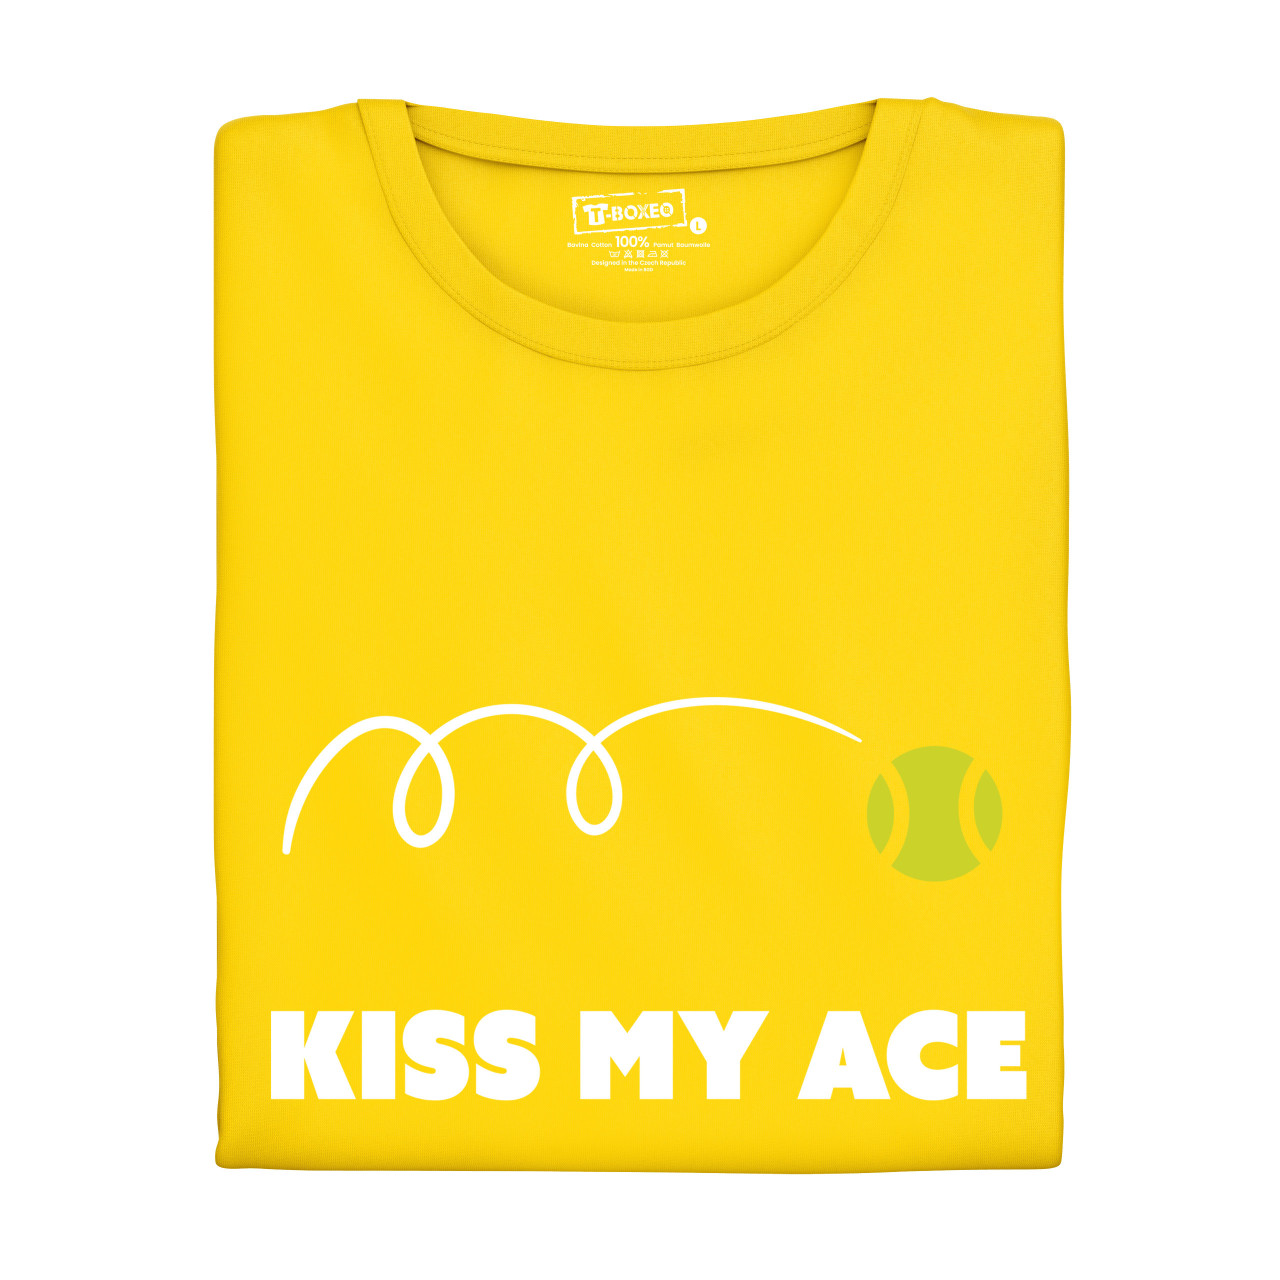 Dámské tričko s potiskem "Kiss my ace"